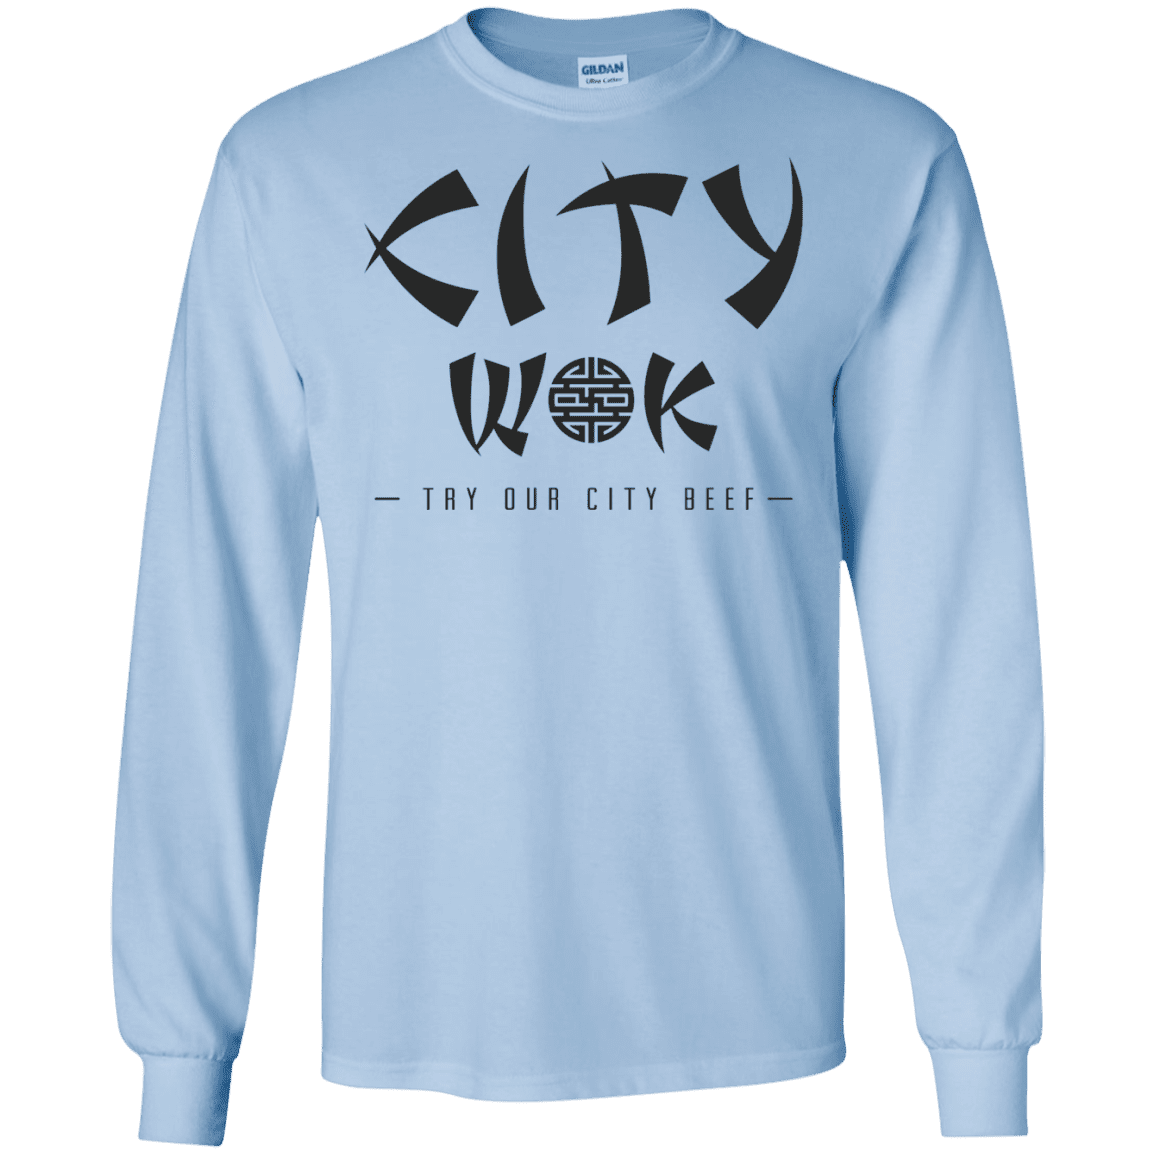 T-Shirts Light Blue / S City Wok Men's Long Sleeve T-Shirt